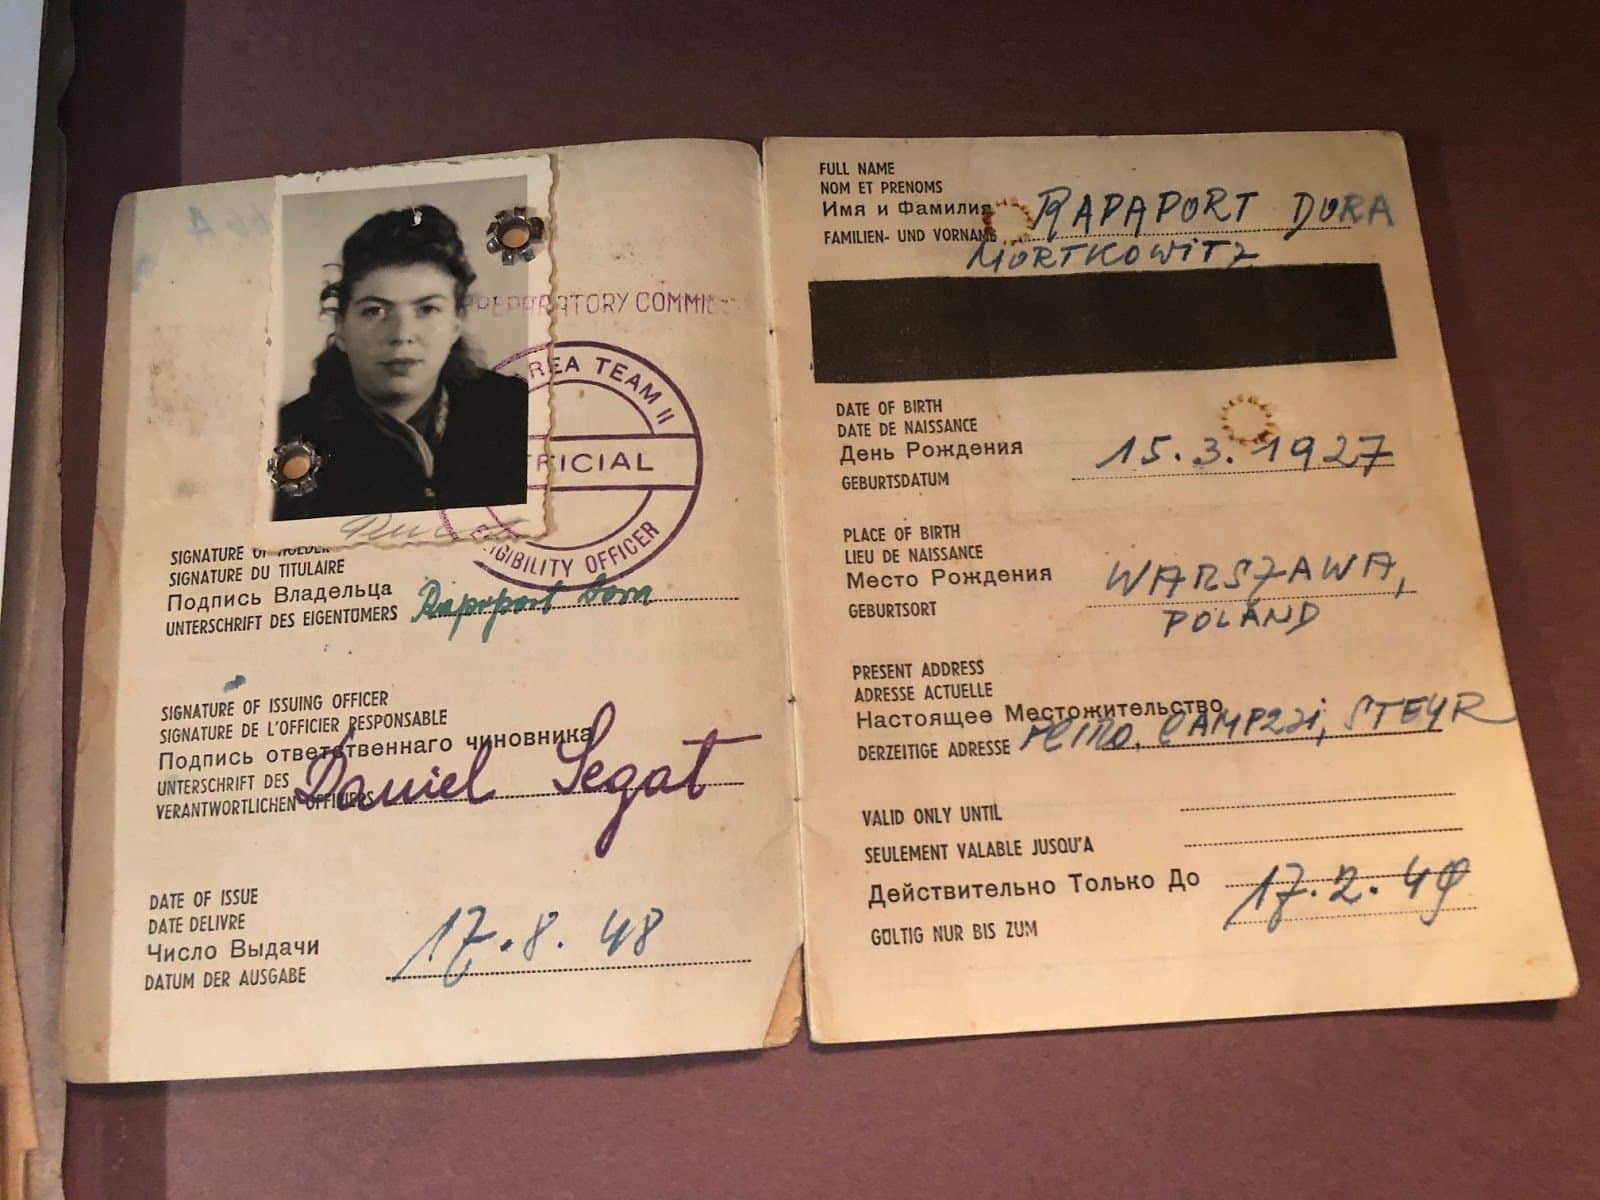 Dora pass som ble utstedt i 1948